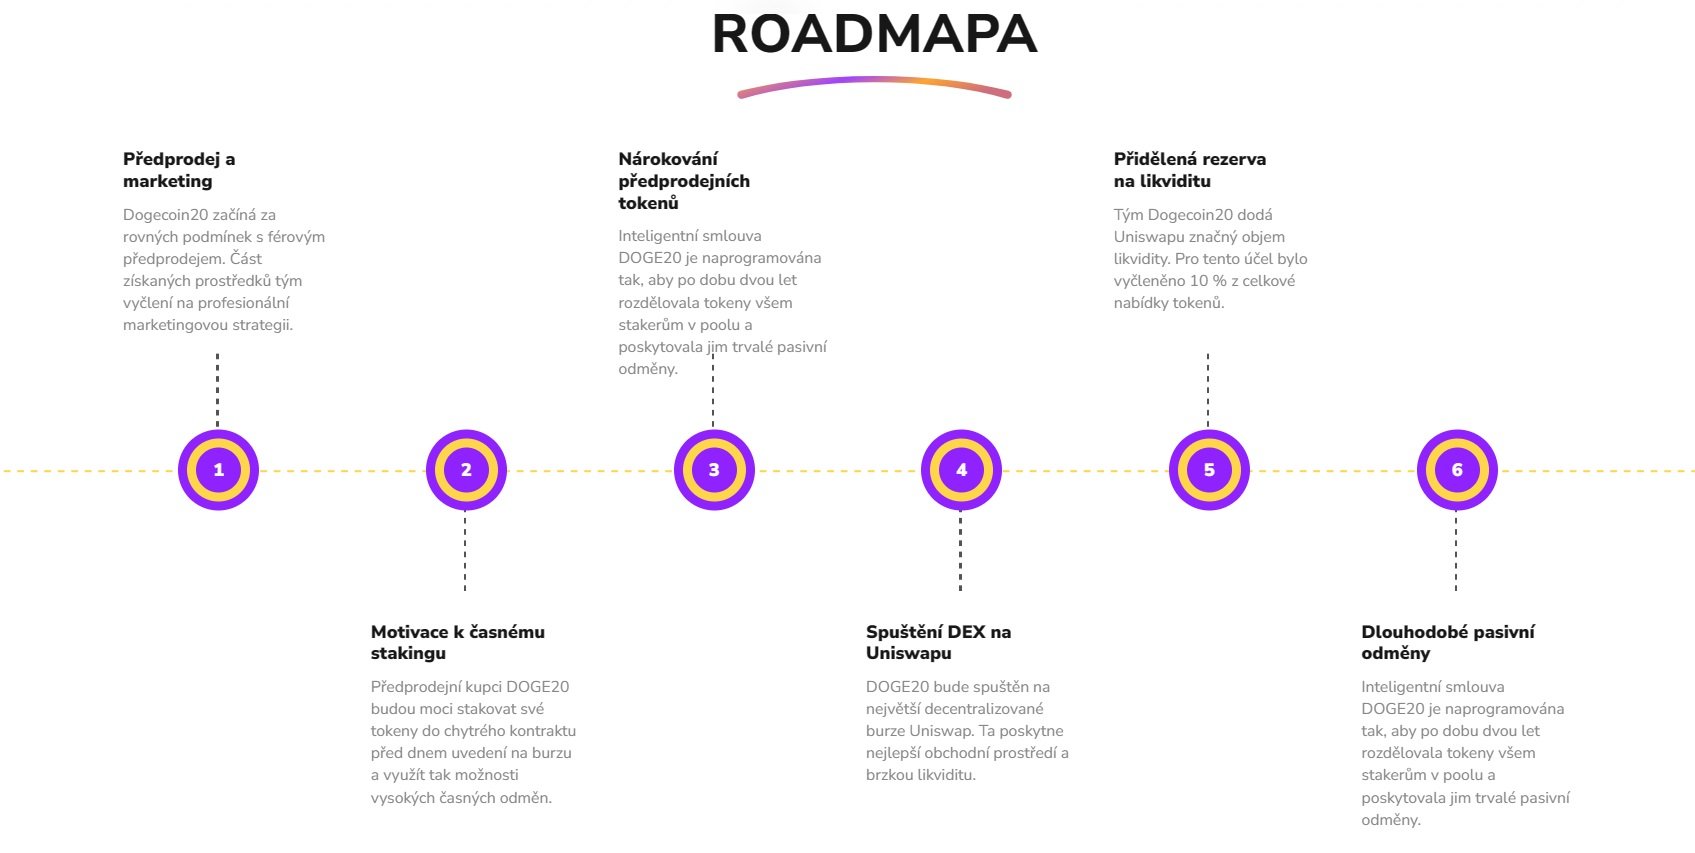 Roadmapa patří mezi kryptoměny s největším potenciálem Dogecoin20 